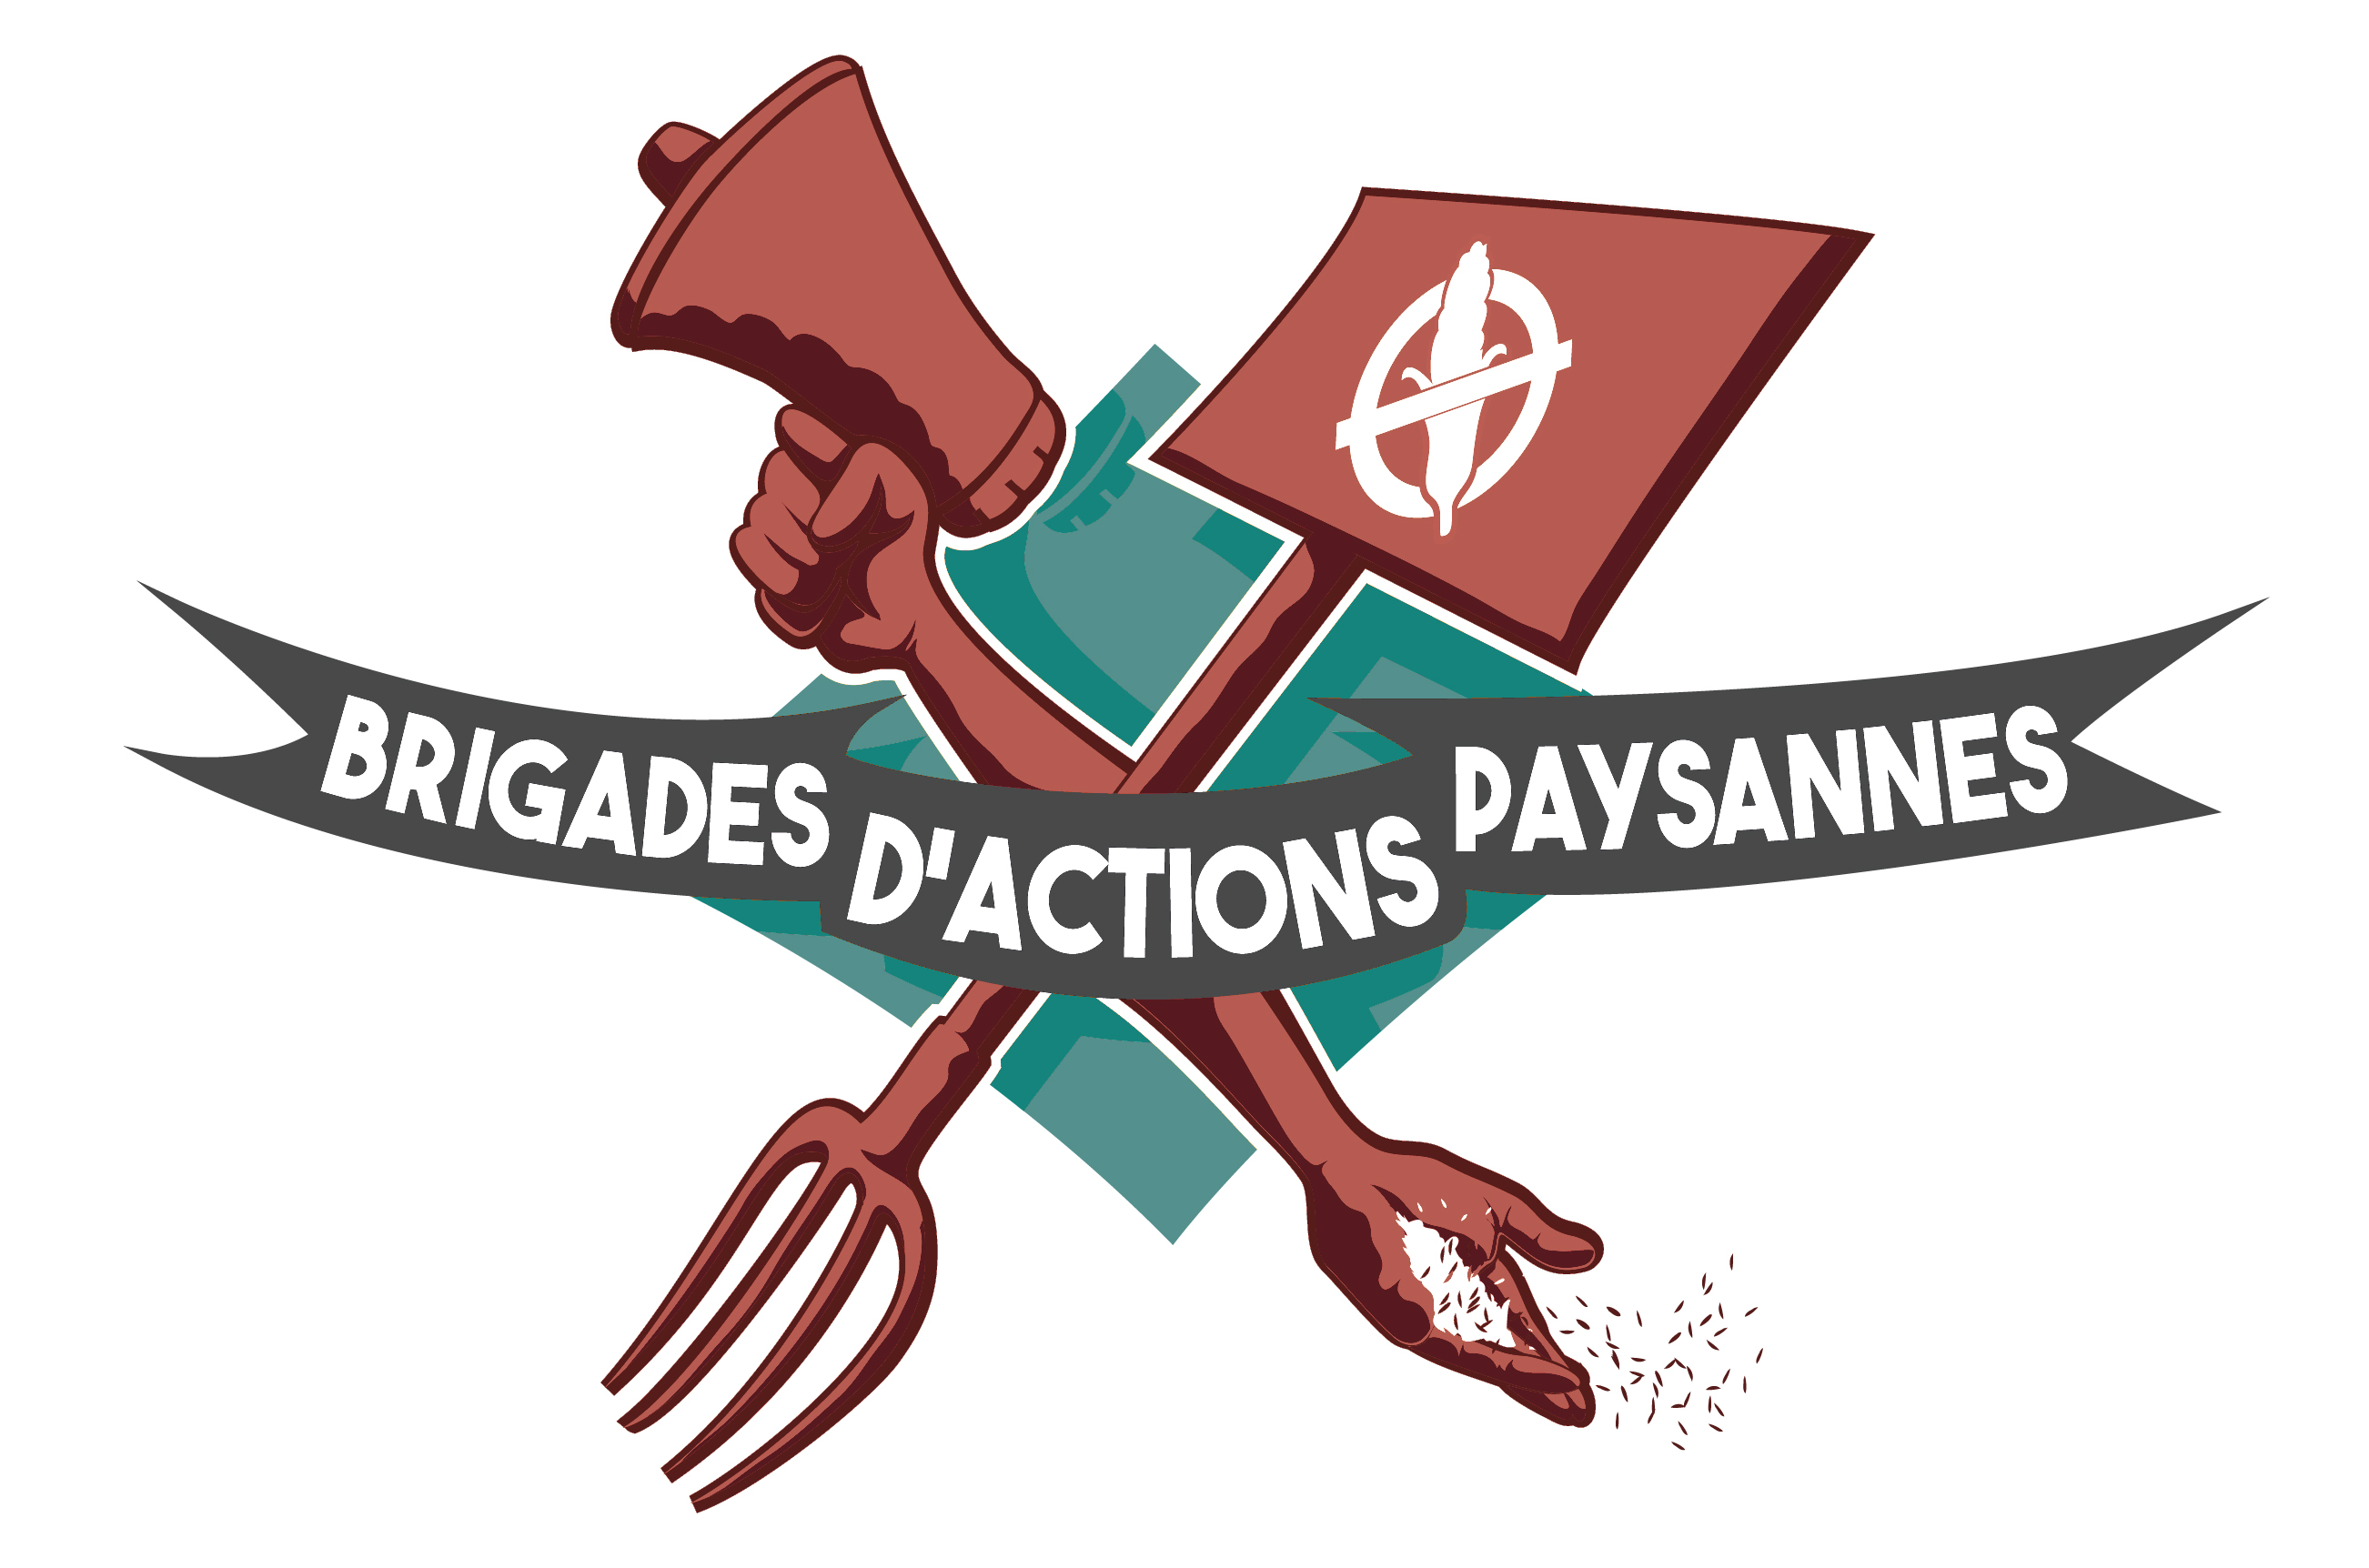 Brigades d'actions paysannes